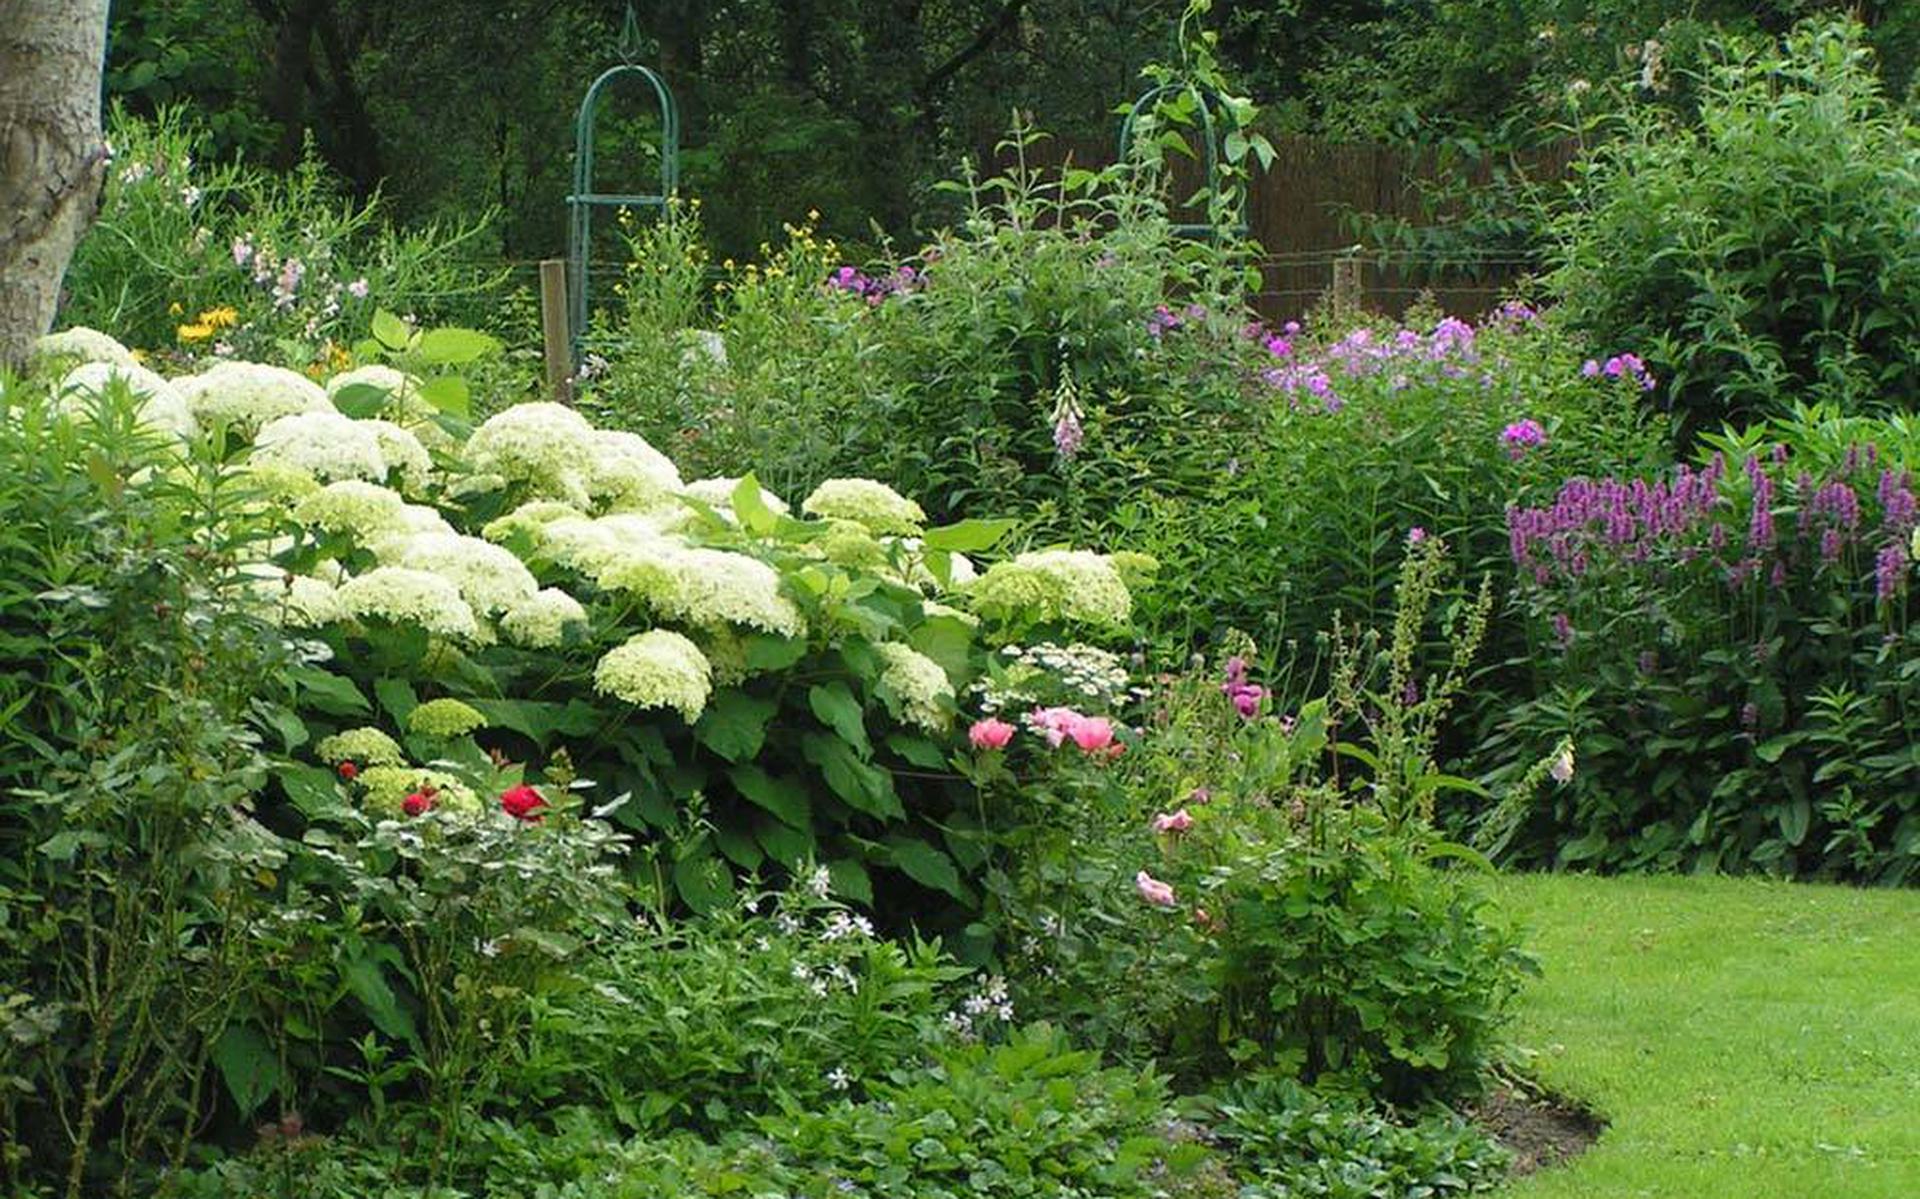 De tuin van Irene Brave in Veeningen.